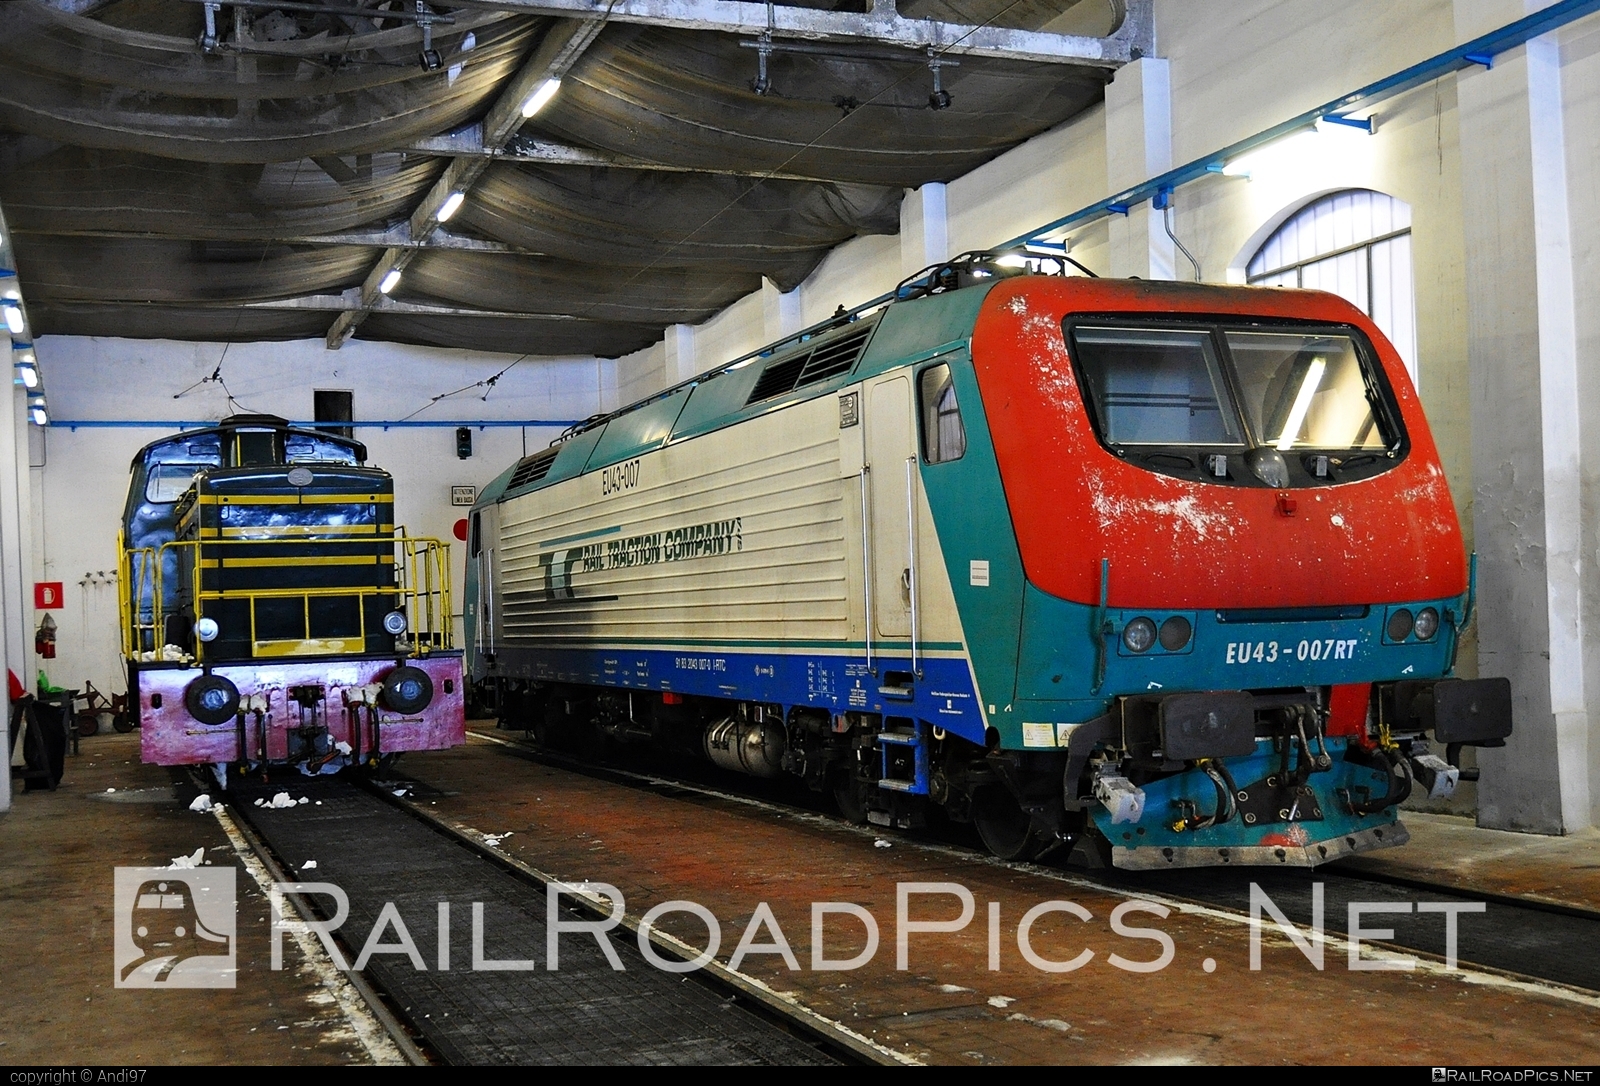 FS Class E.412 - EU43-007 operated by Rail Traction Company #RailTractionCompany #e412 #fsClassE412 #hangar #rtc